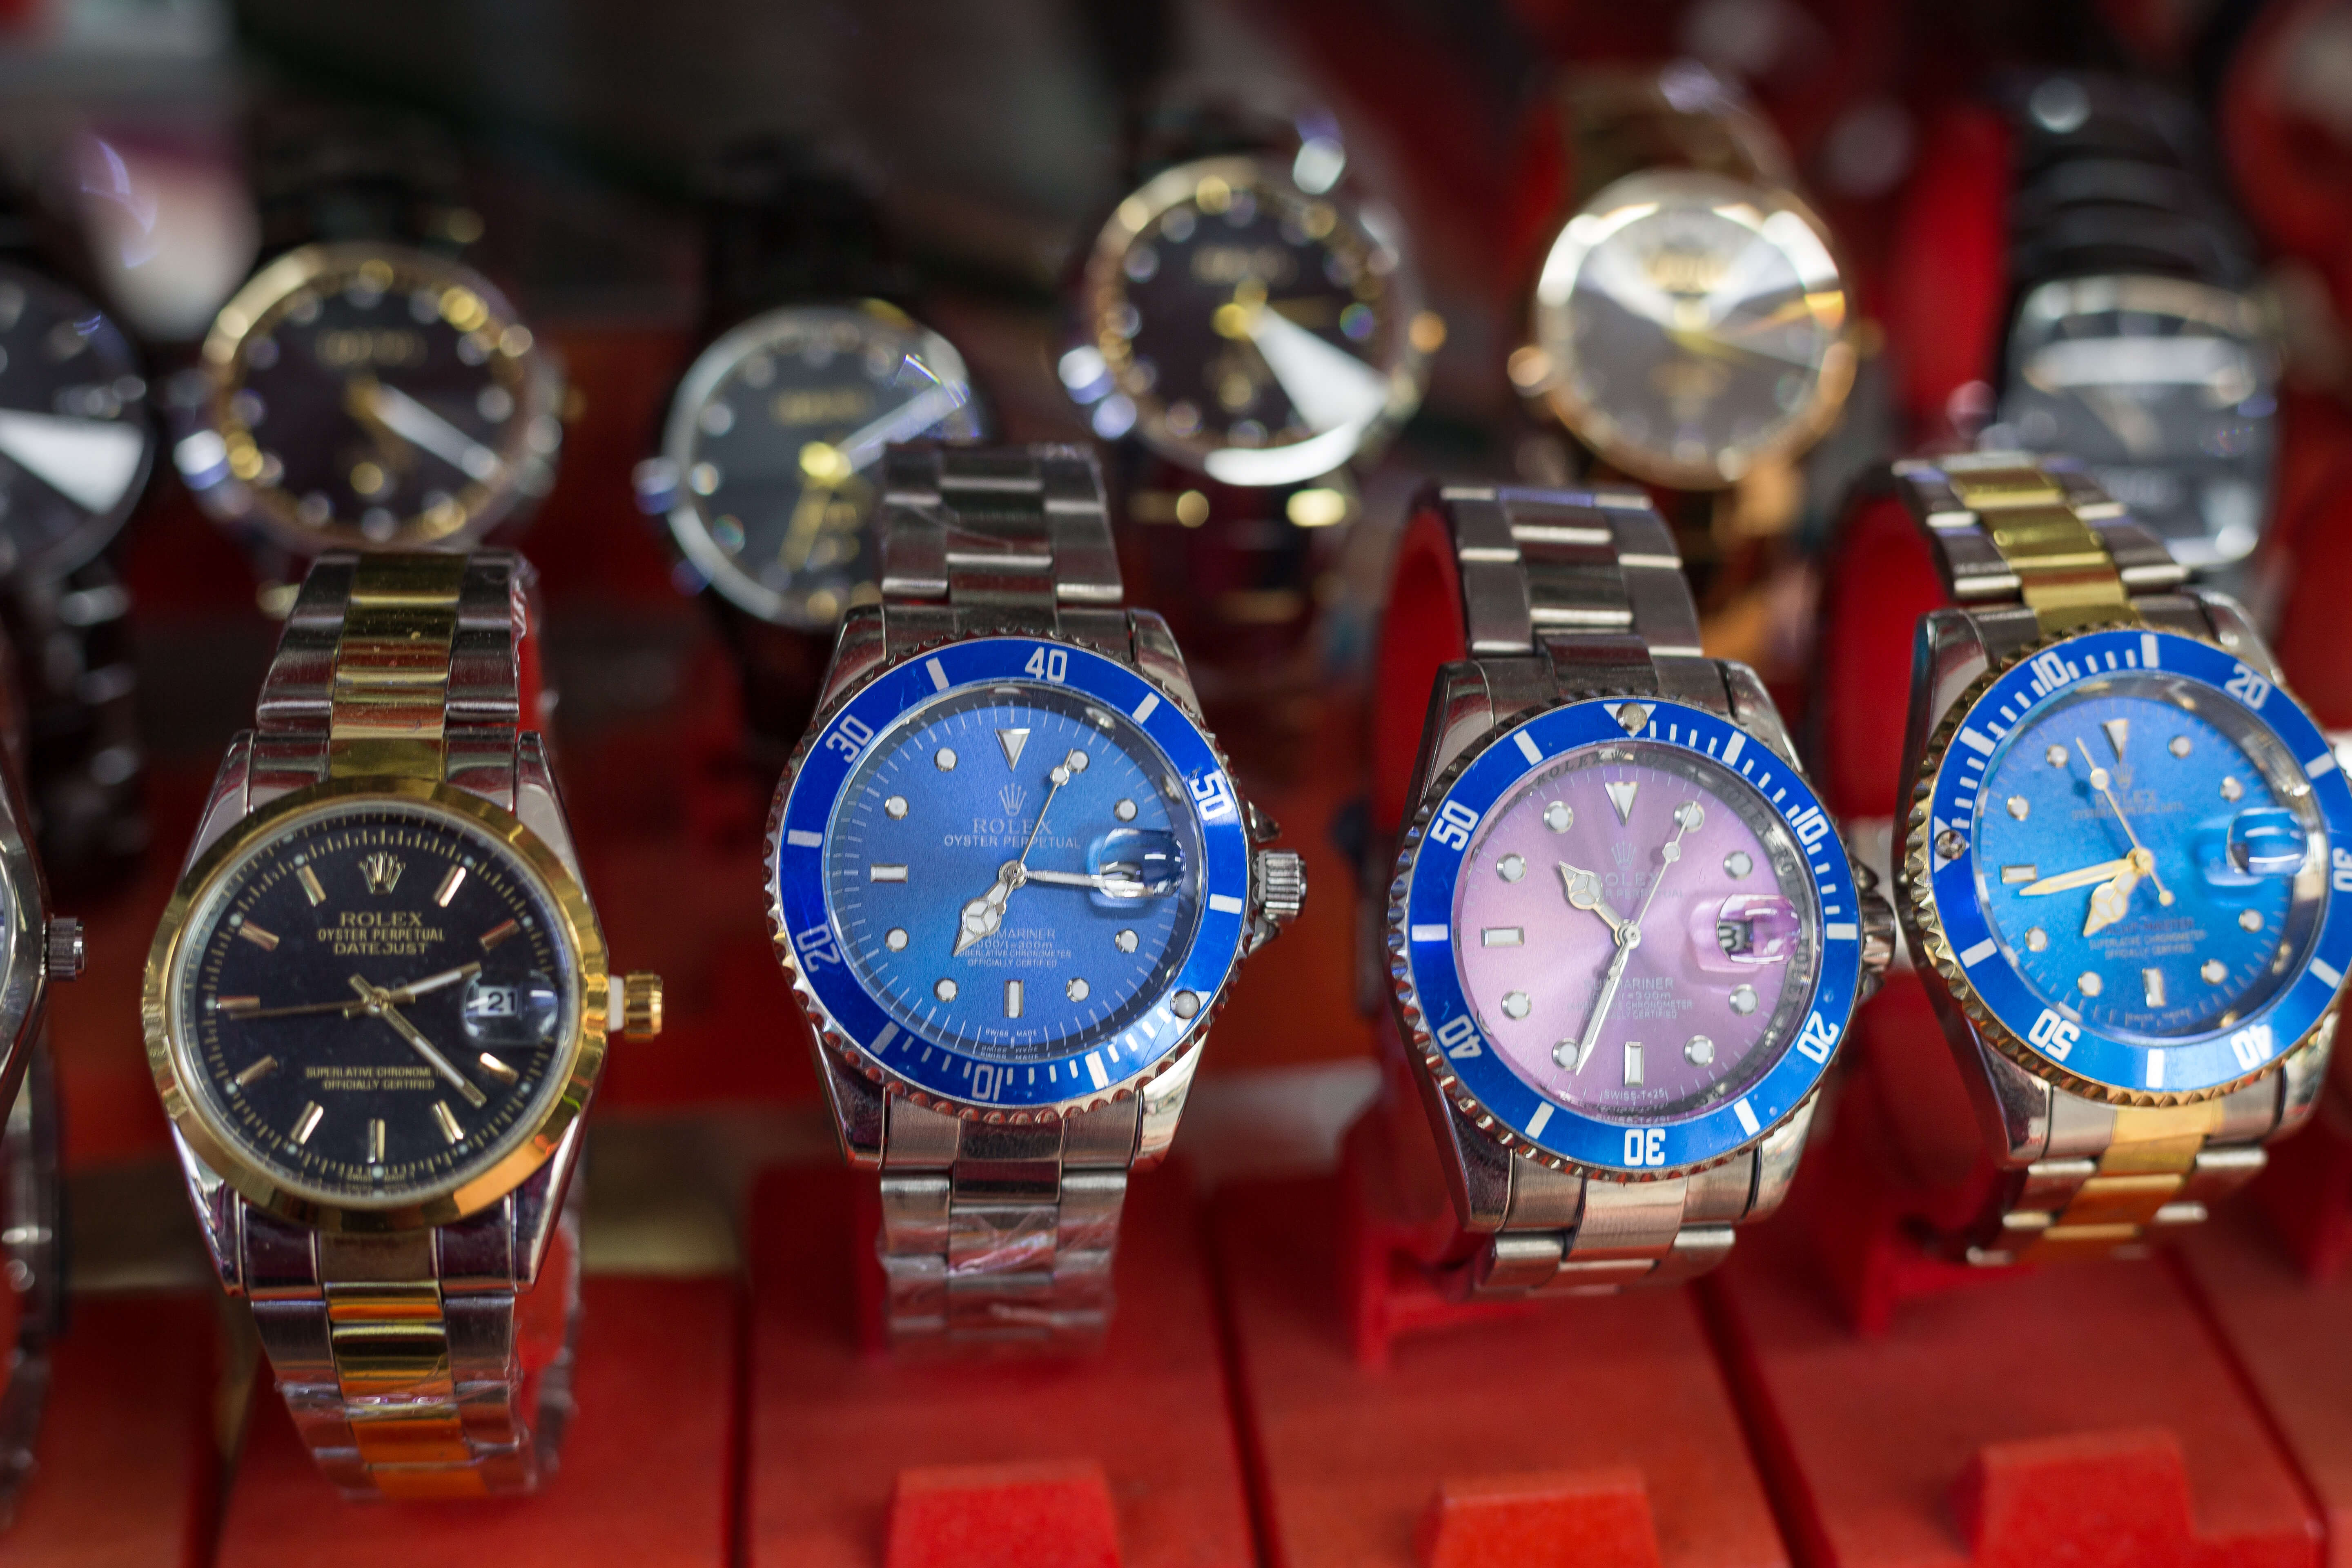 Fake Rolex watch and Genuine Rolex watch